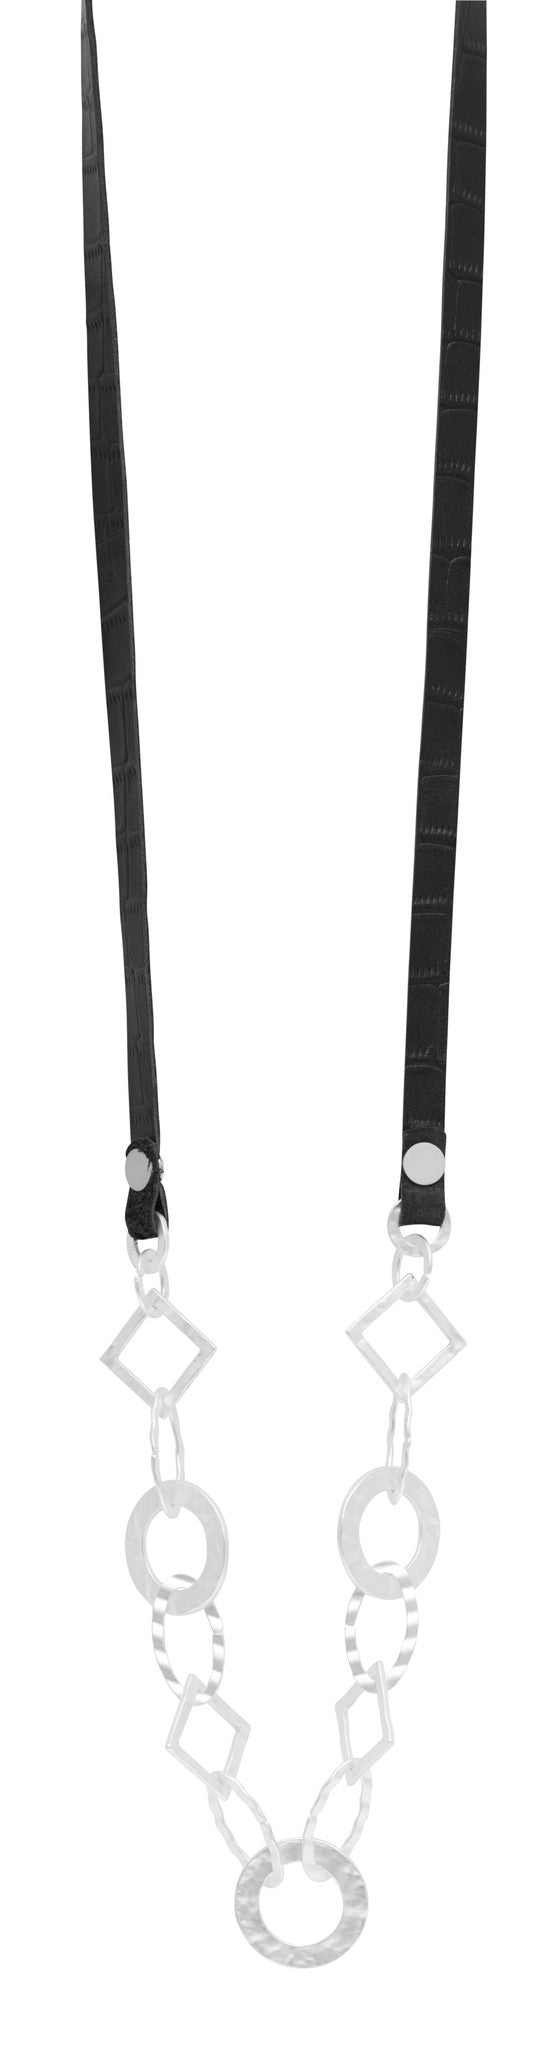 Halskette "Paula" silber/schwarz in 2 Längen